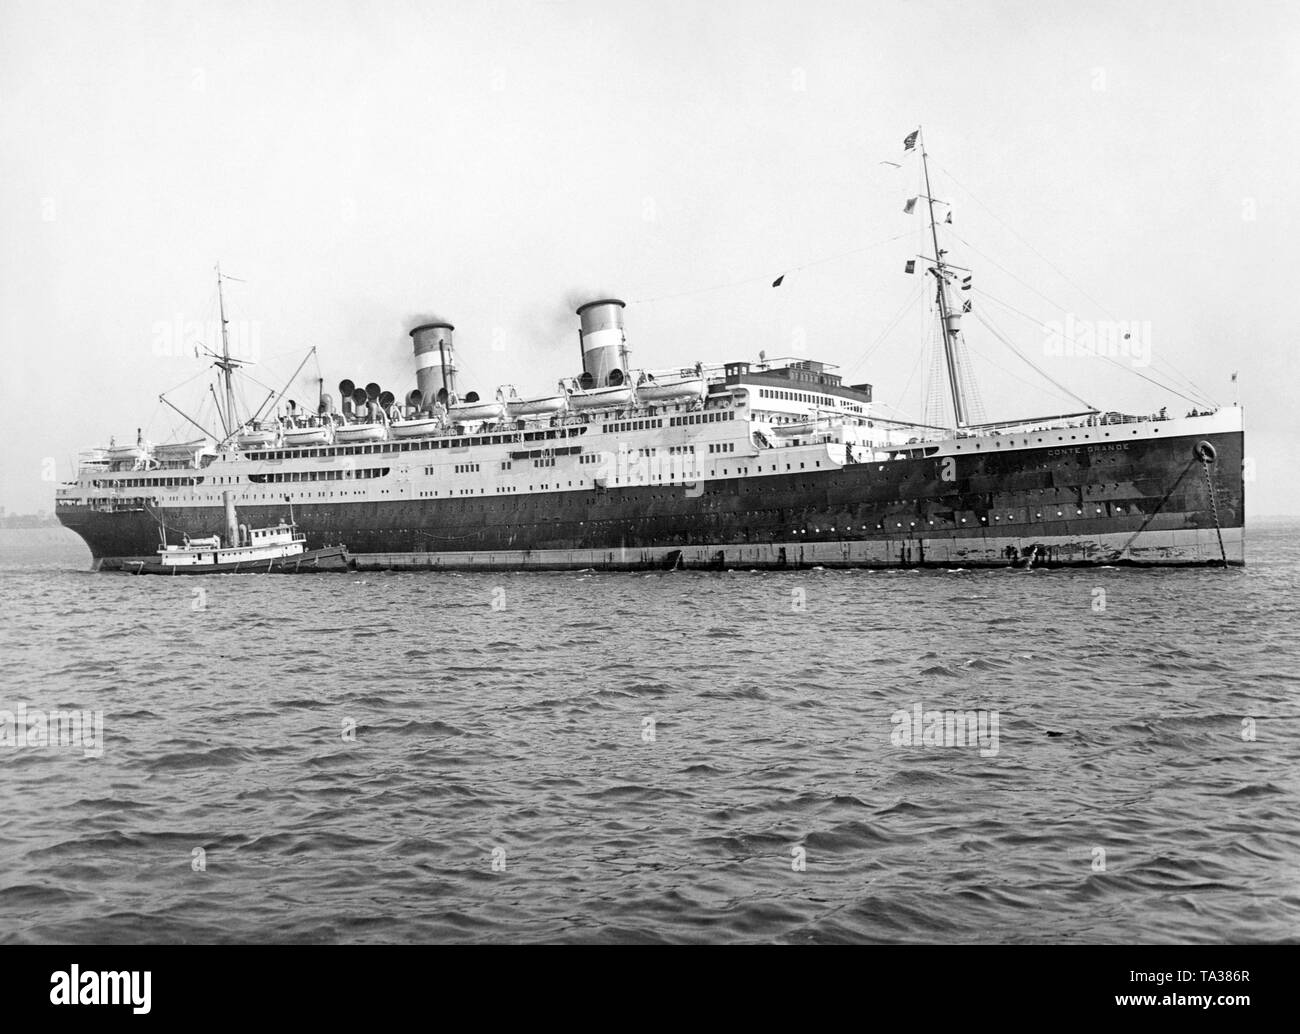 Die italienischen Ozeandampfer "Conte Grande" auf See. Während des Zweiten Weltkrieges, die USS Monticello Schiff wurde von der US Navy als Truppentransporter eingesetzt. Stockfoto